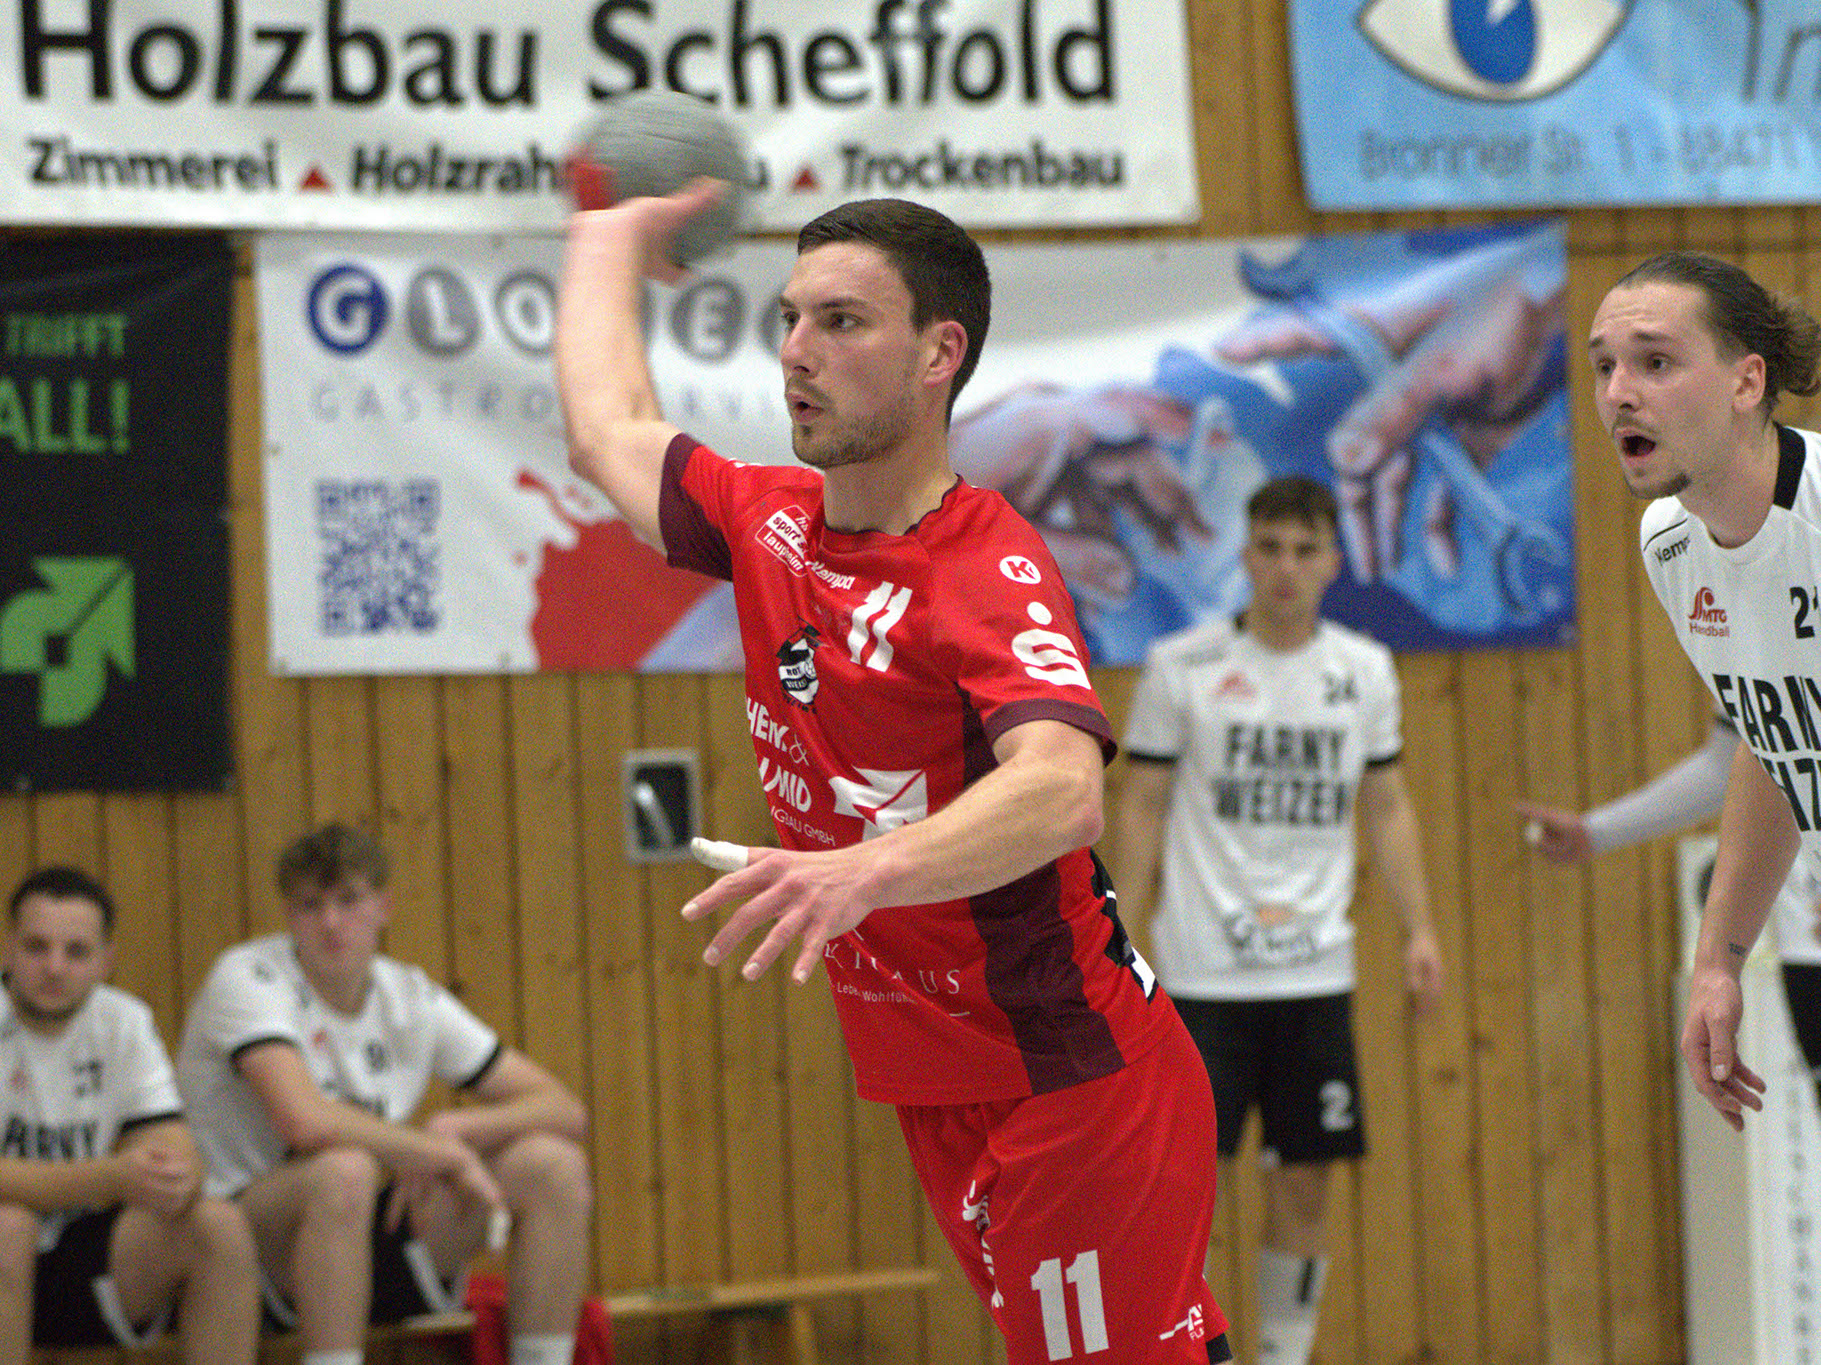 Handballspieler des HRW-Laupheim in rotem Trikot kurz vor dem Abwurf